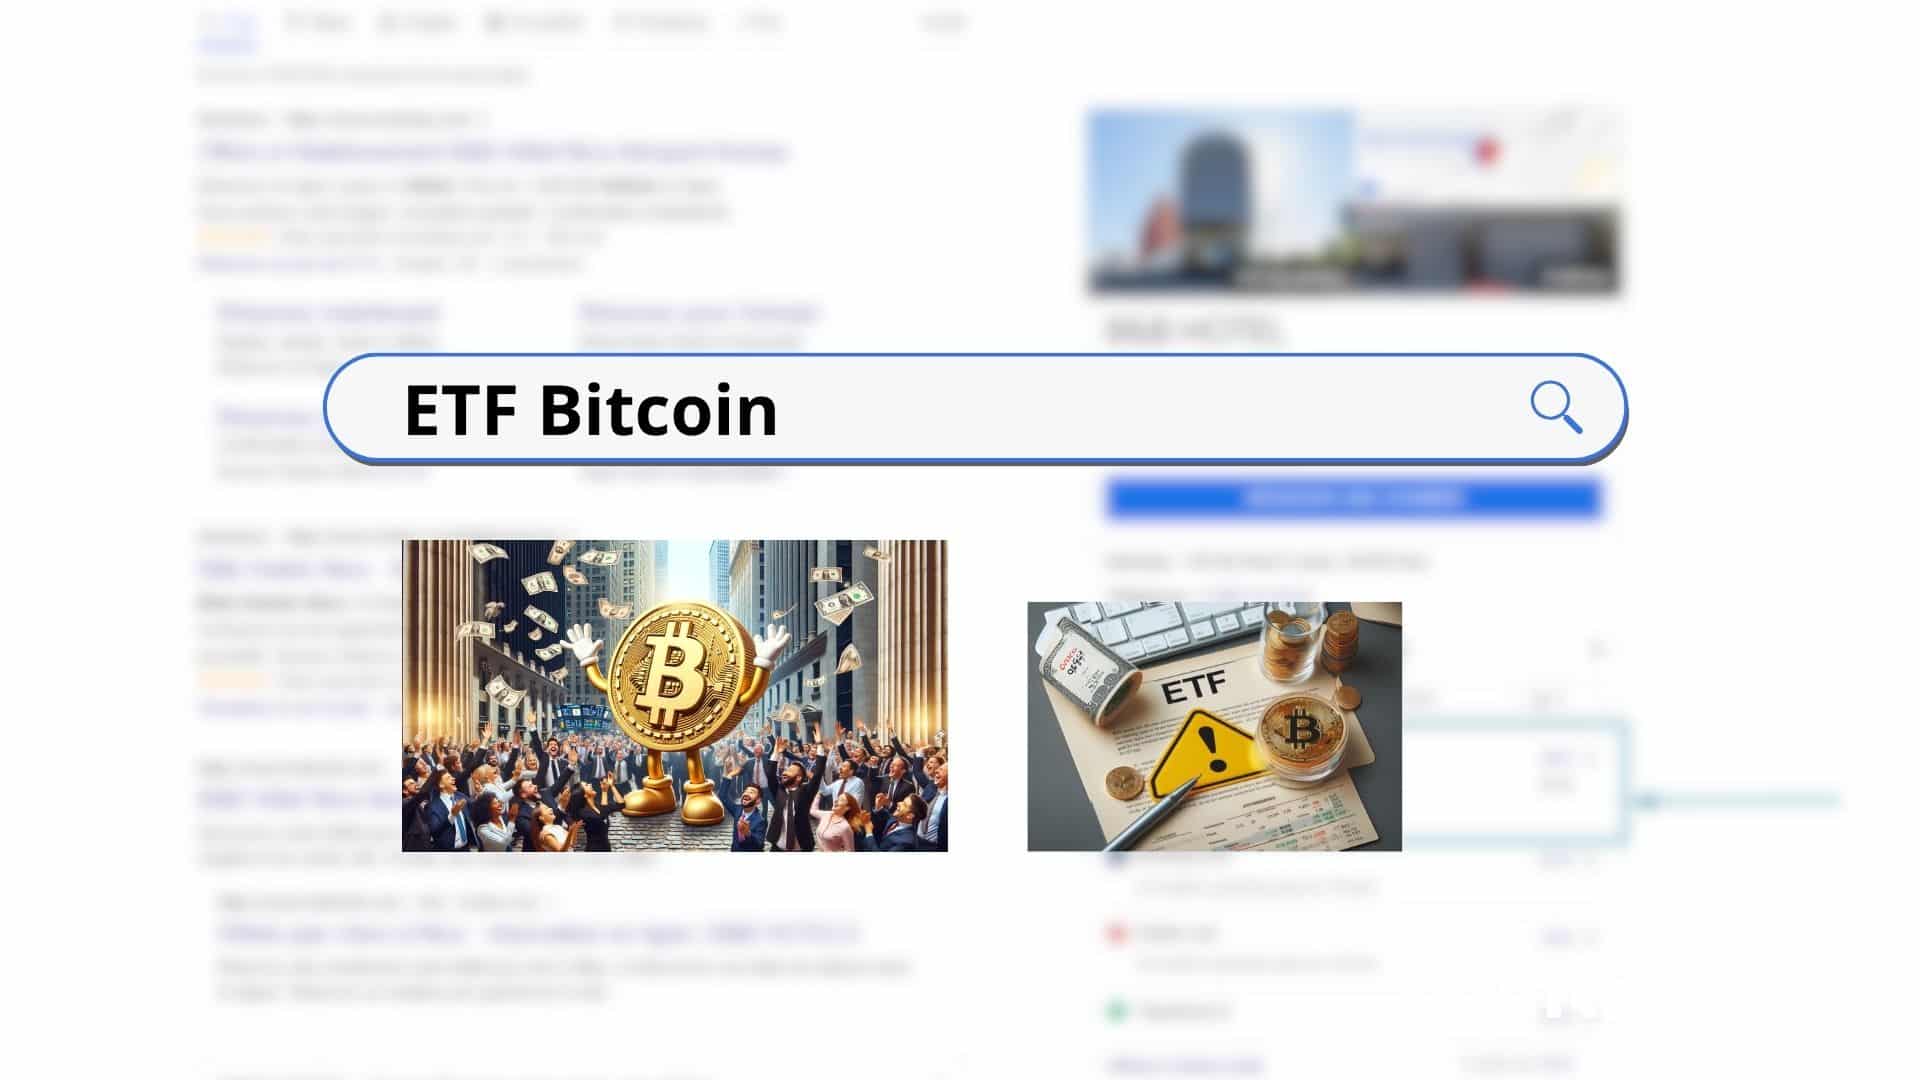 ETF Bitcoin Google